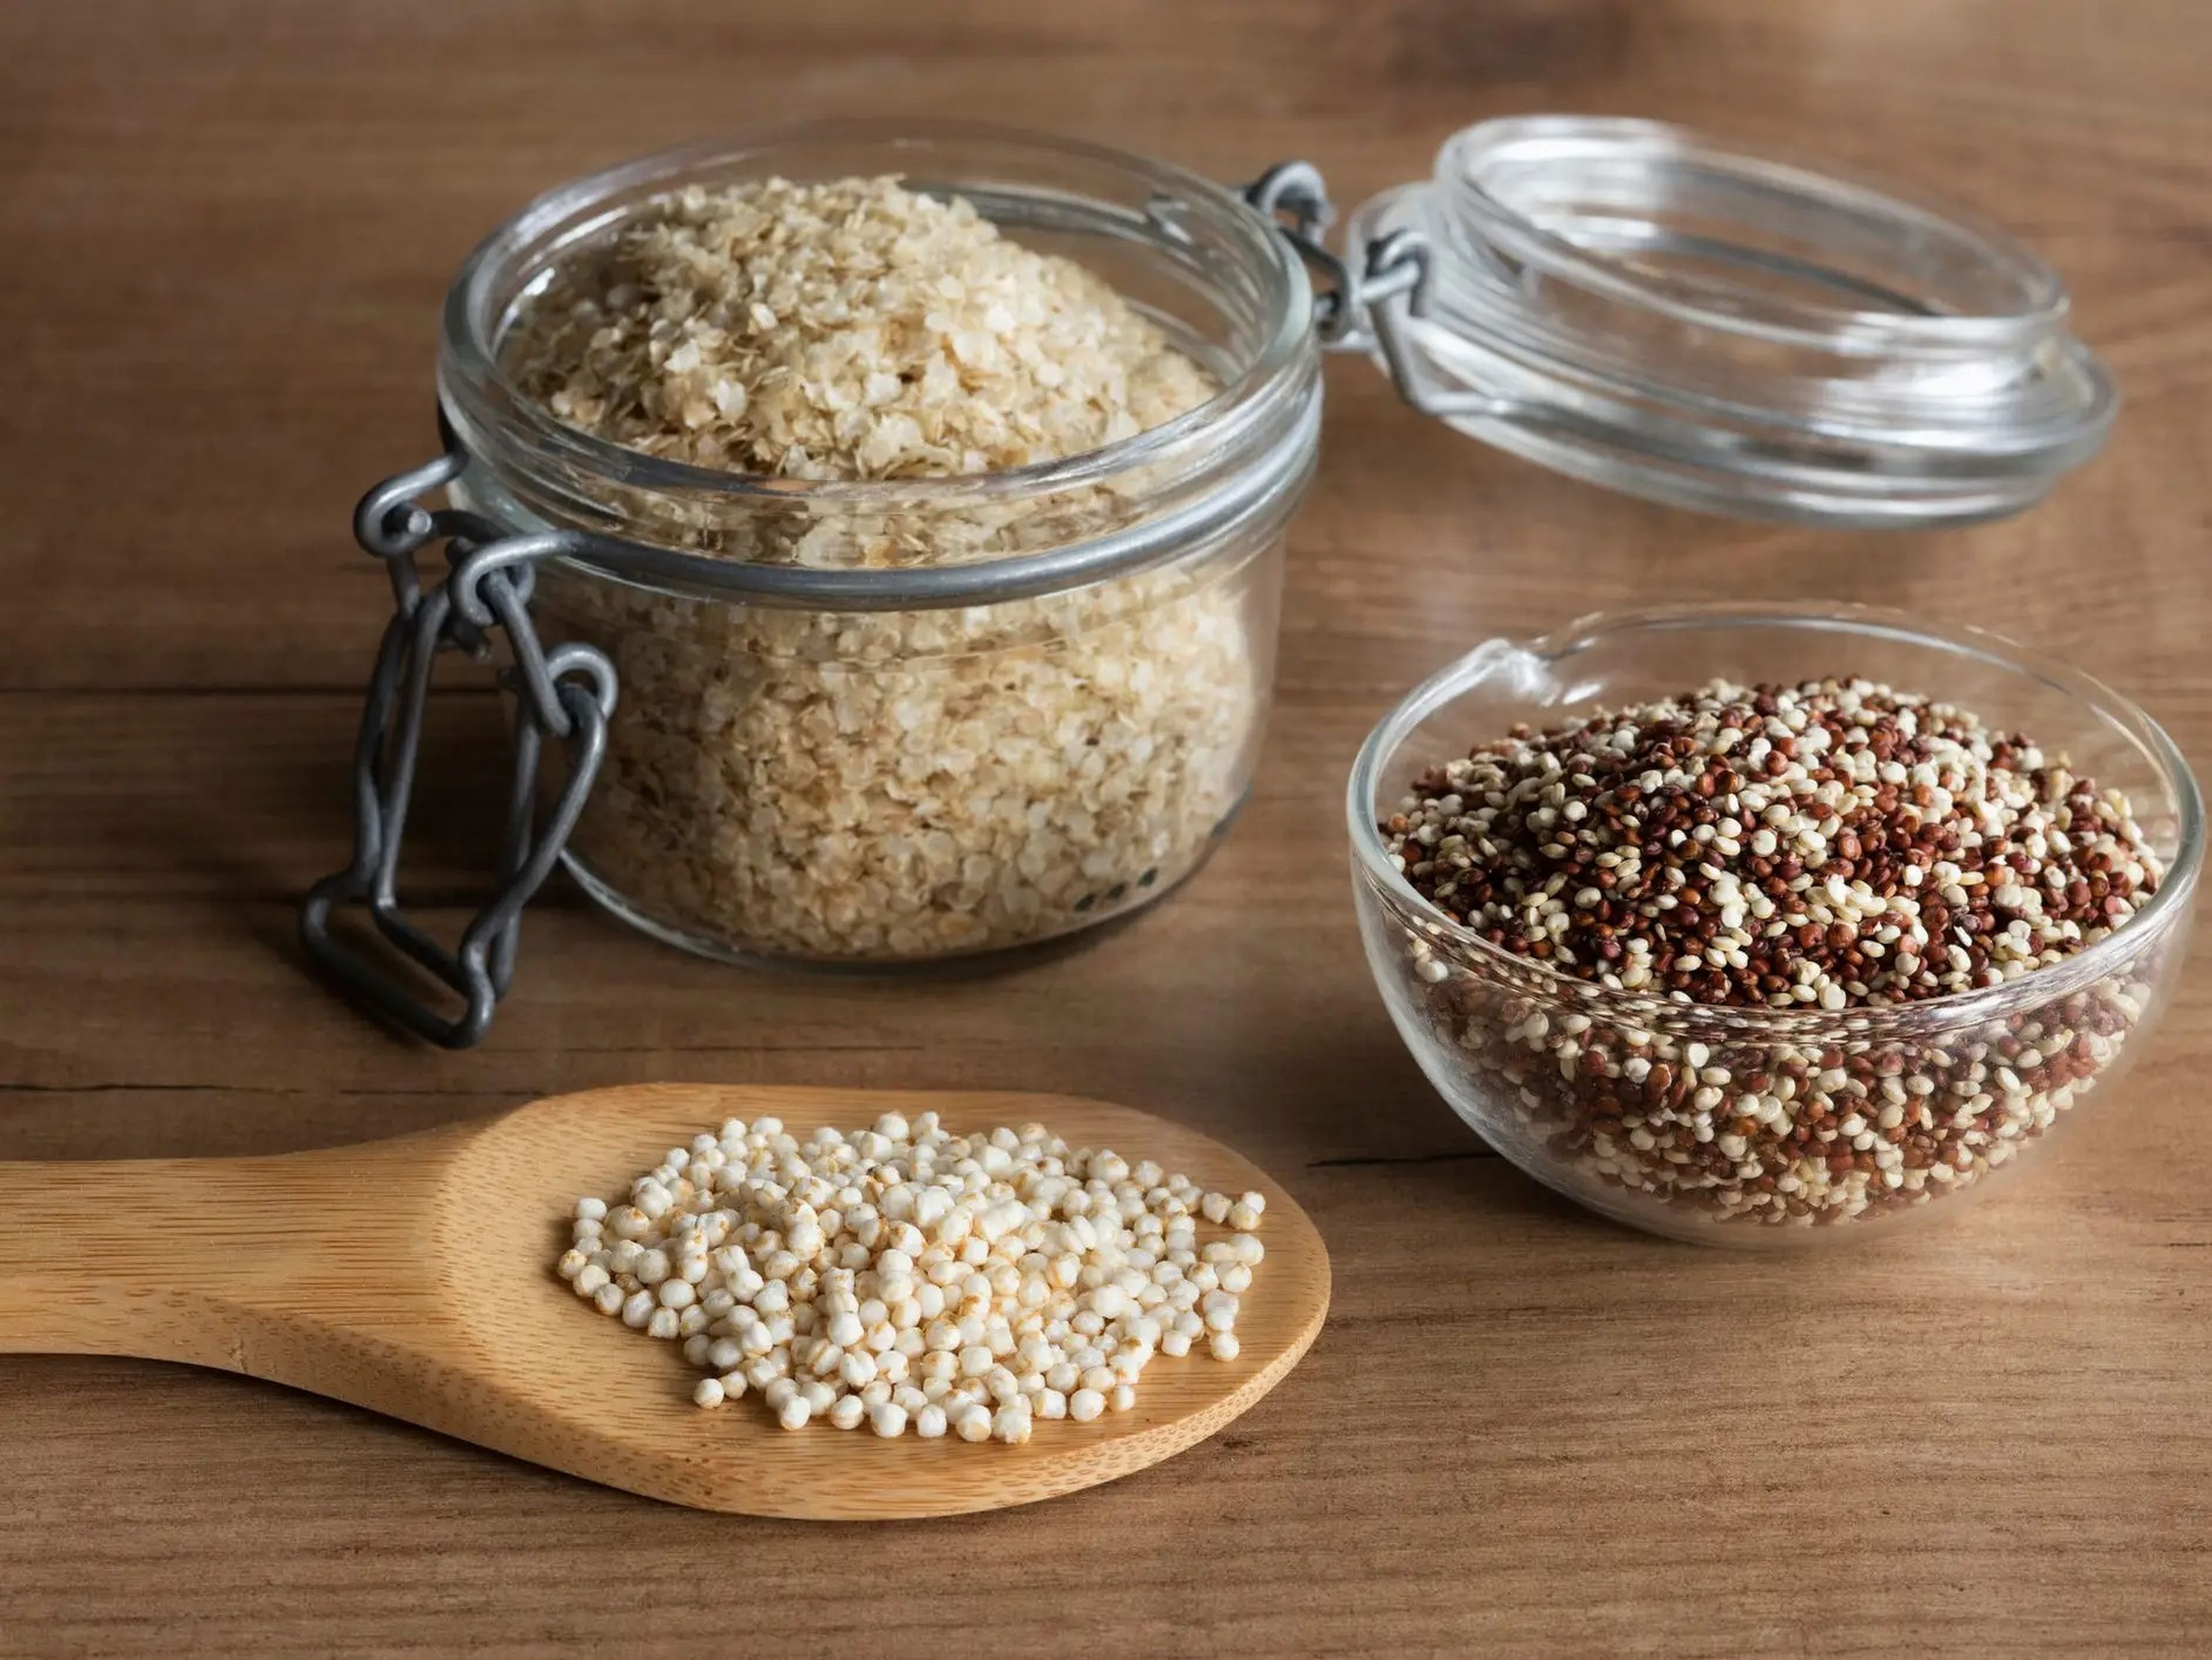 Los granos pueden añadir proteínas a su dieta junto con fibra y carbohidratos saludables.